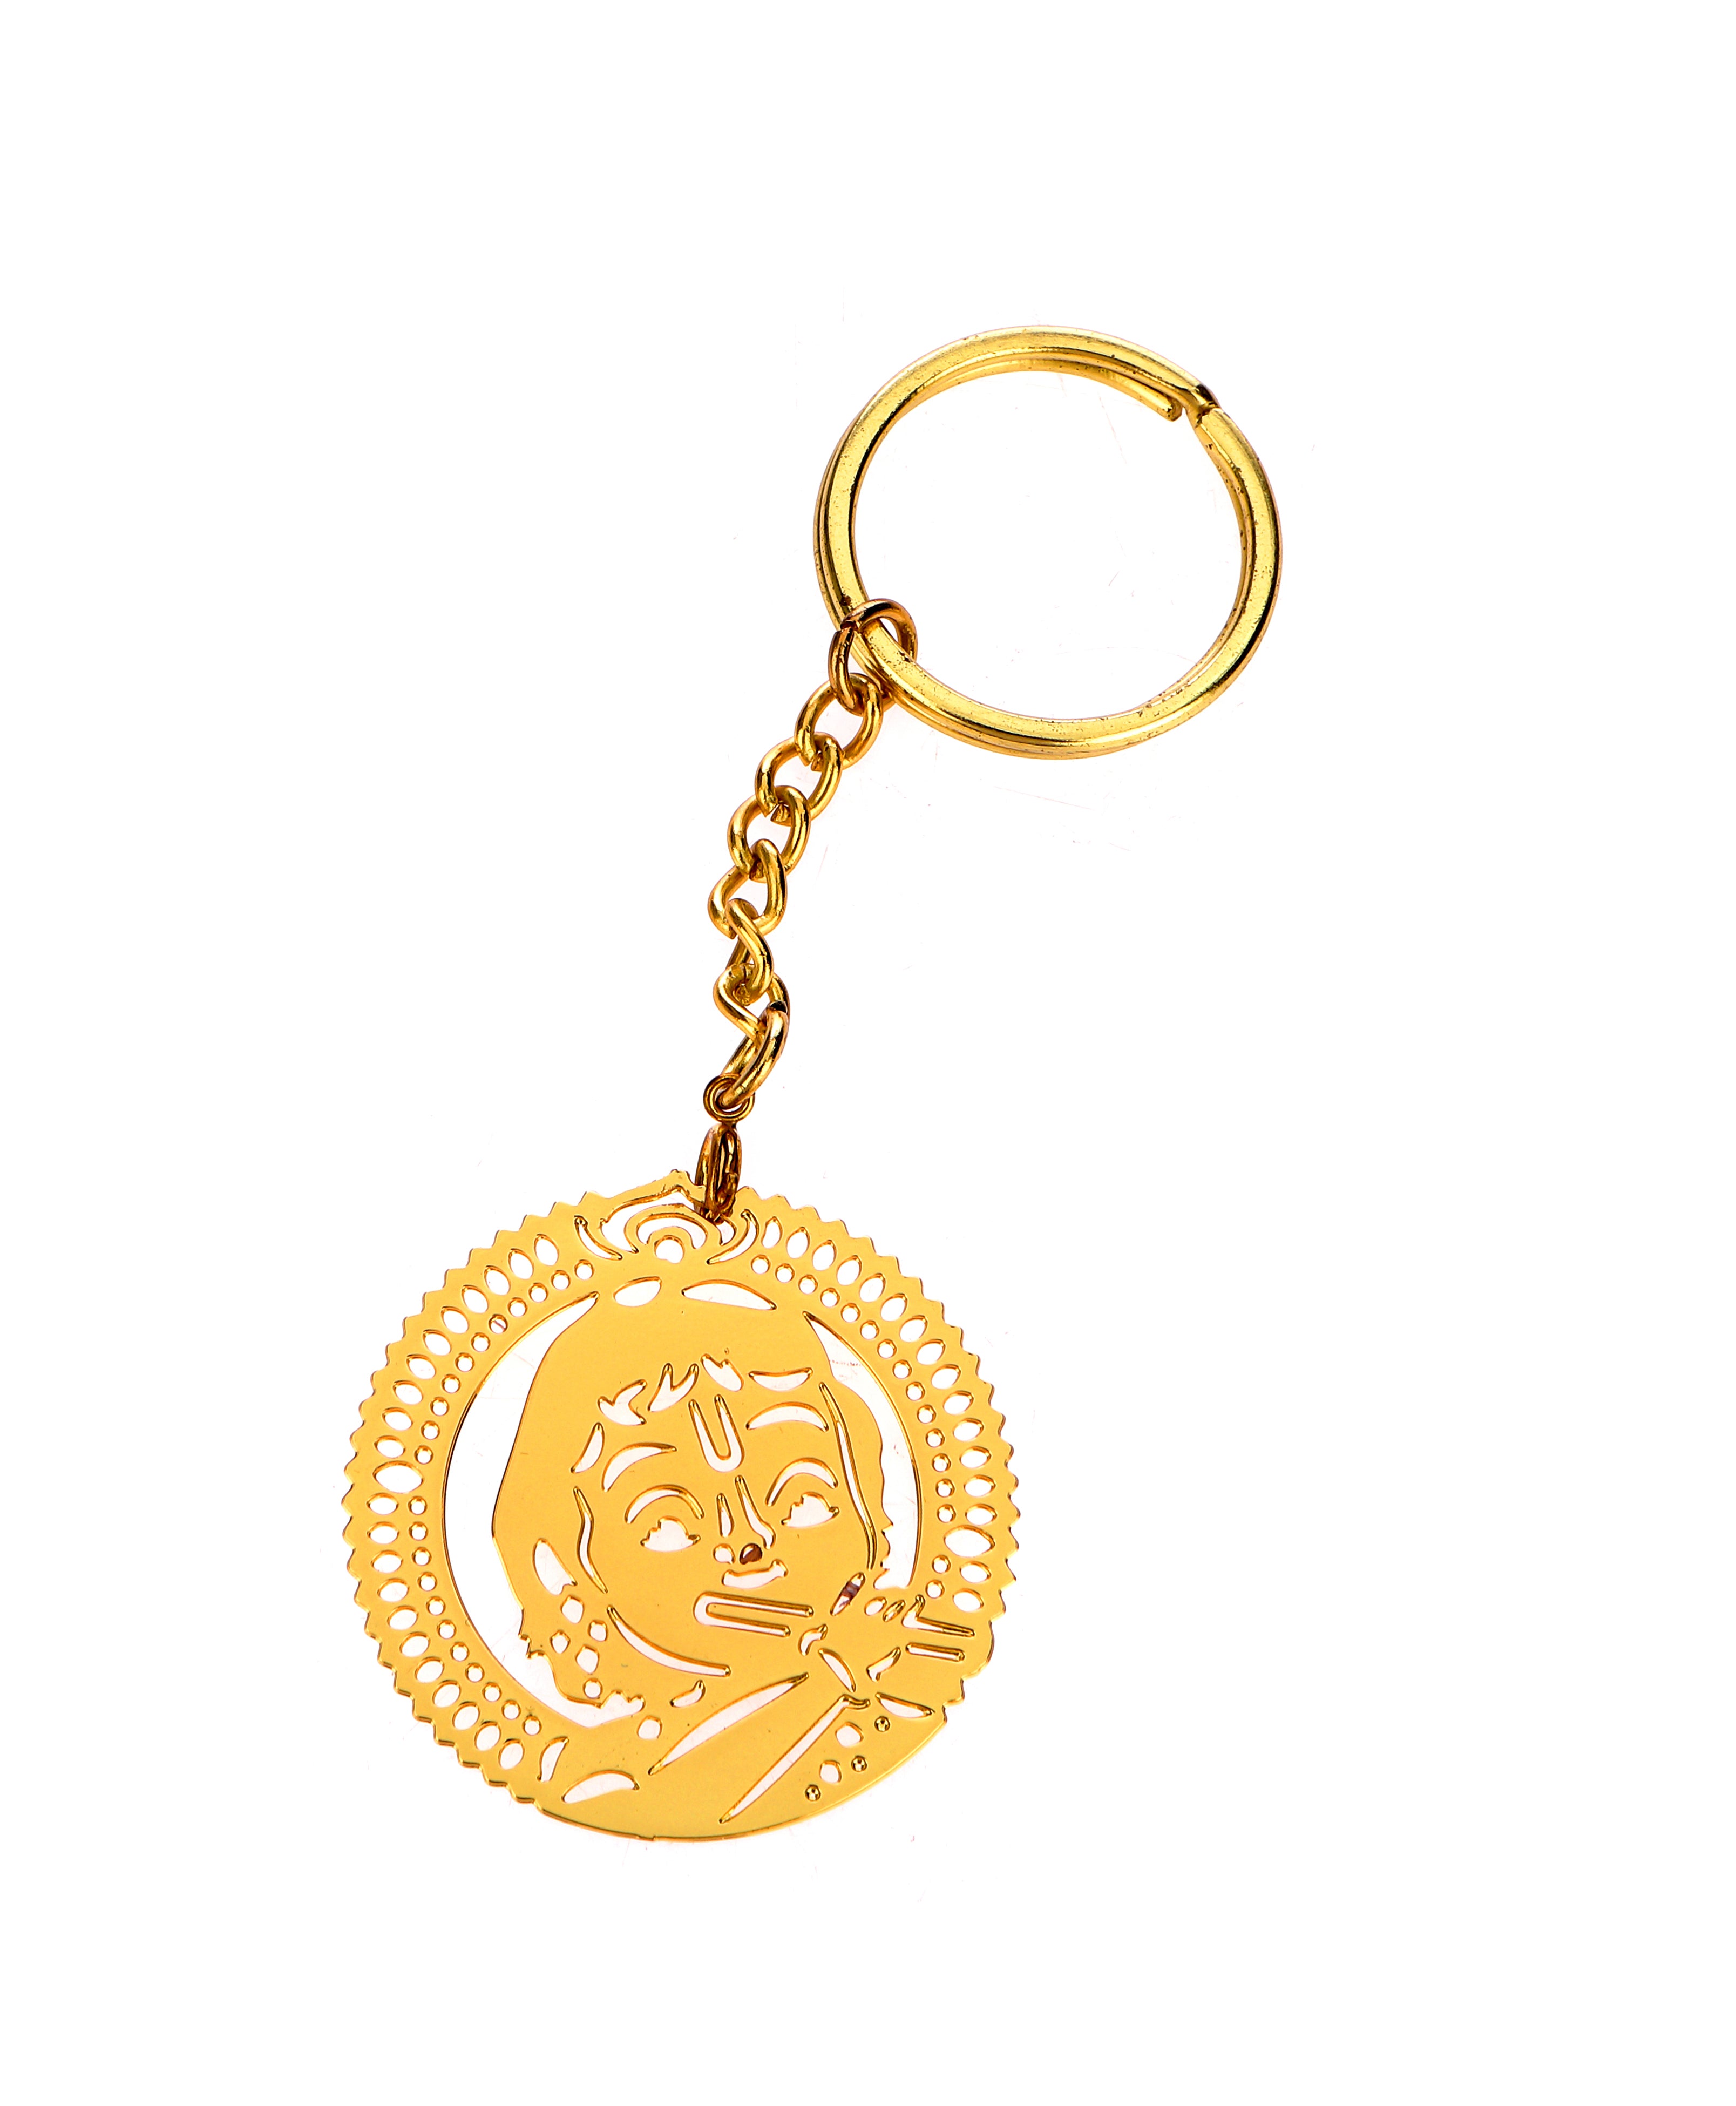 Adoraa's Bal Krishna Brass Key Chain Ring in Golden Finish